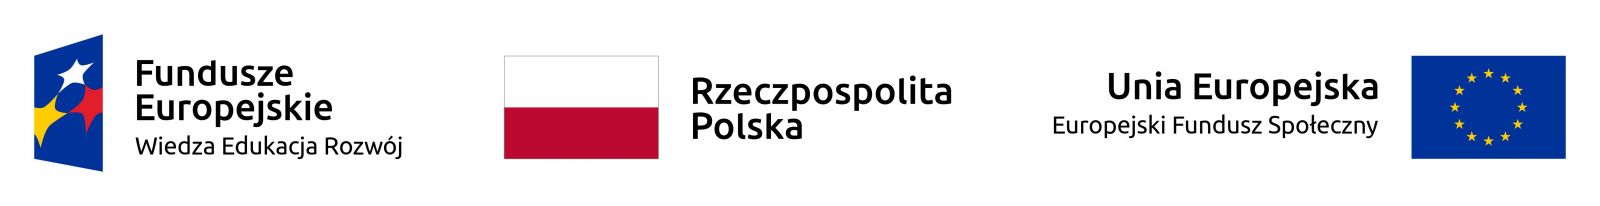 Logotypy projektowe - flaga Unii Europejskiej, flaga Rzeczypospolitej Polskiej, logotyp Funduszy Europejskich